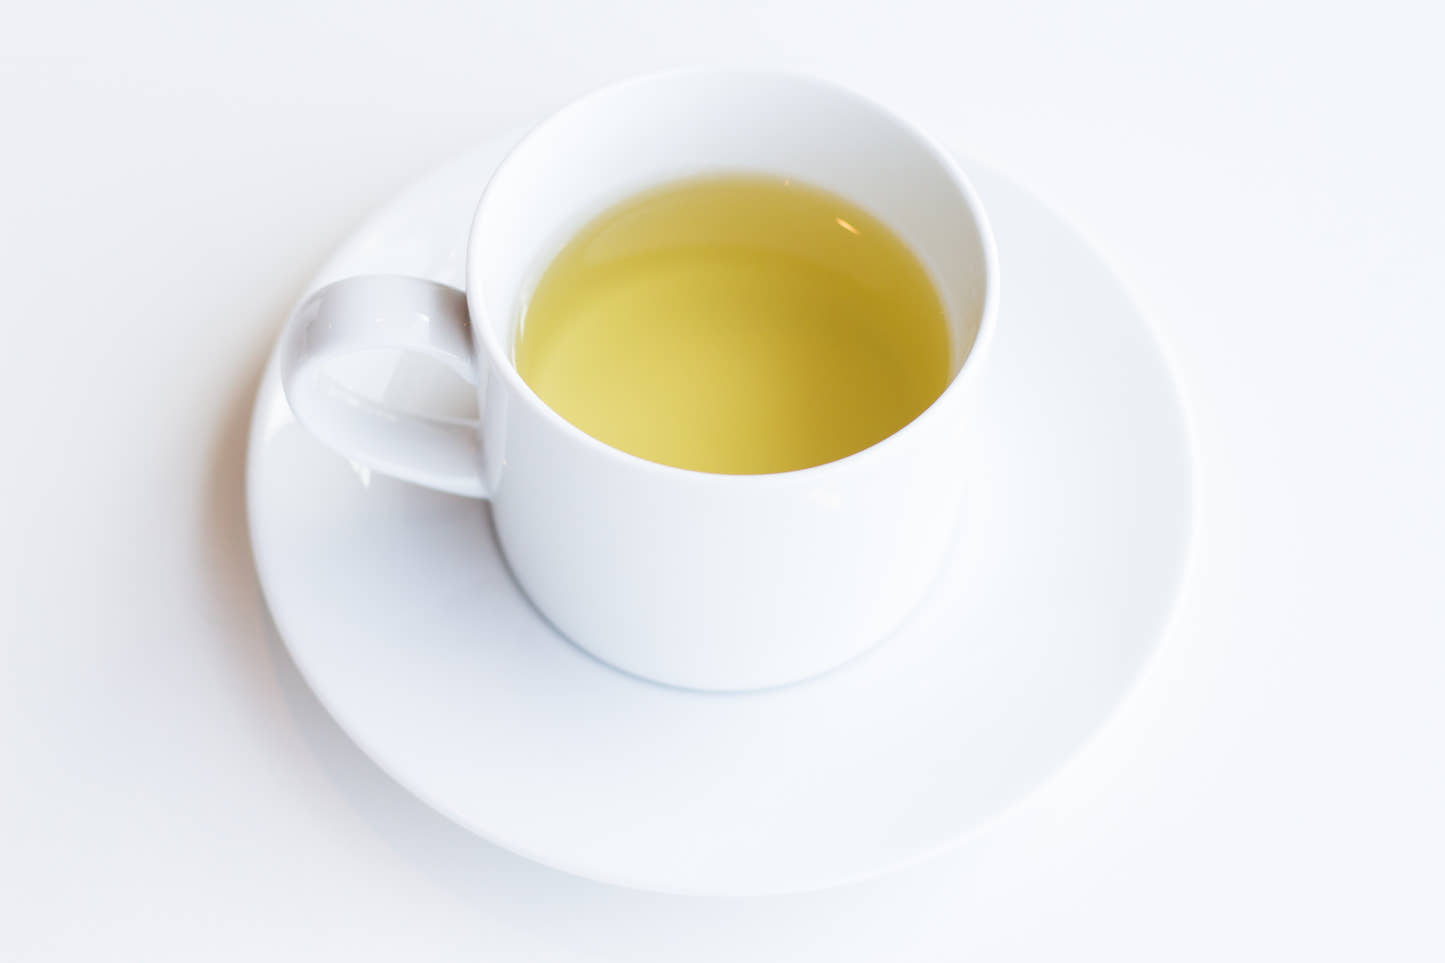 Organic Chunmee Green Tea